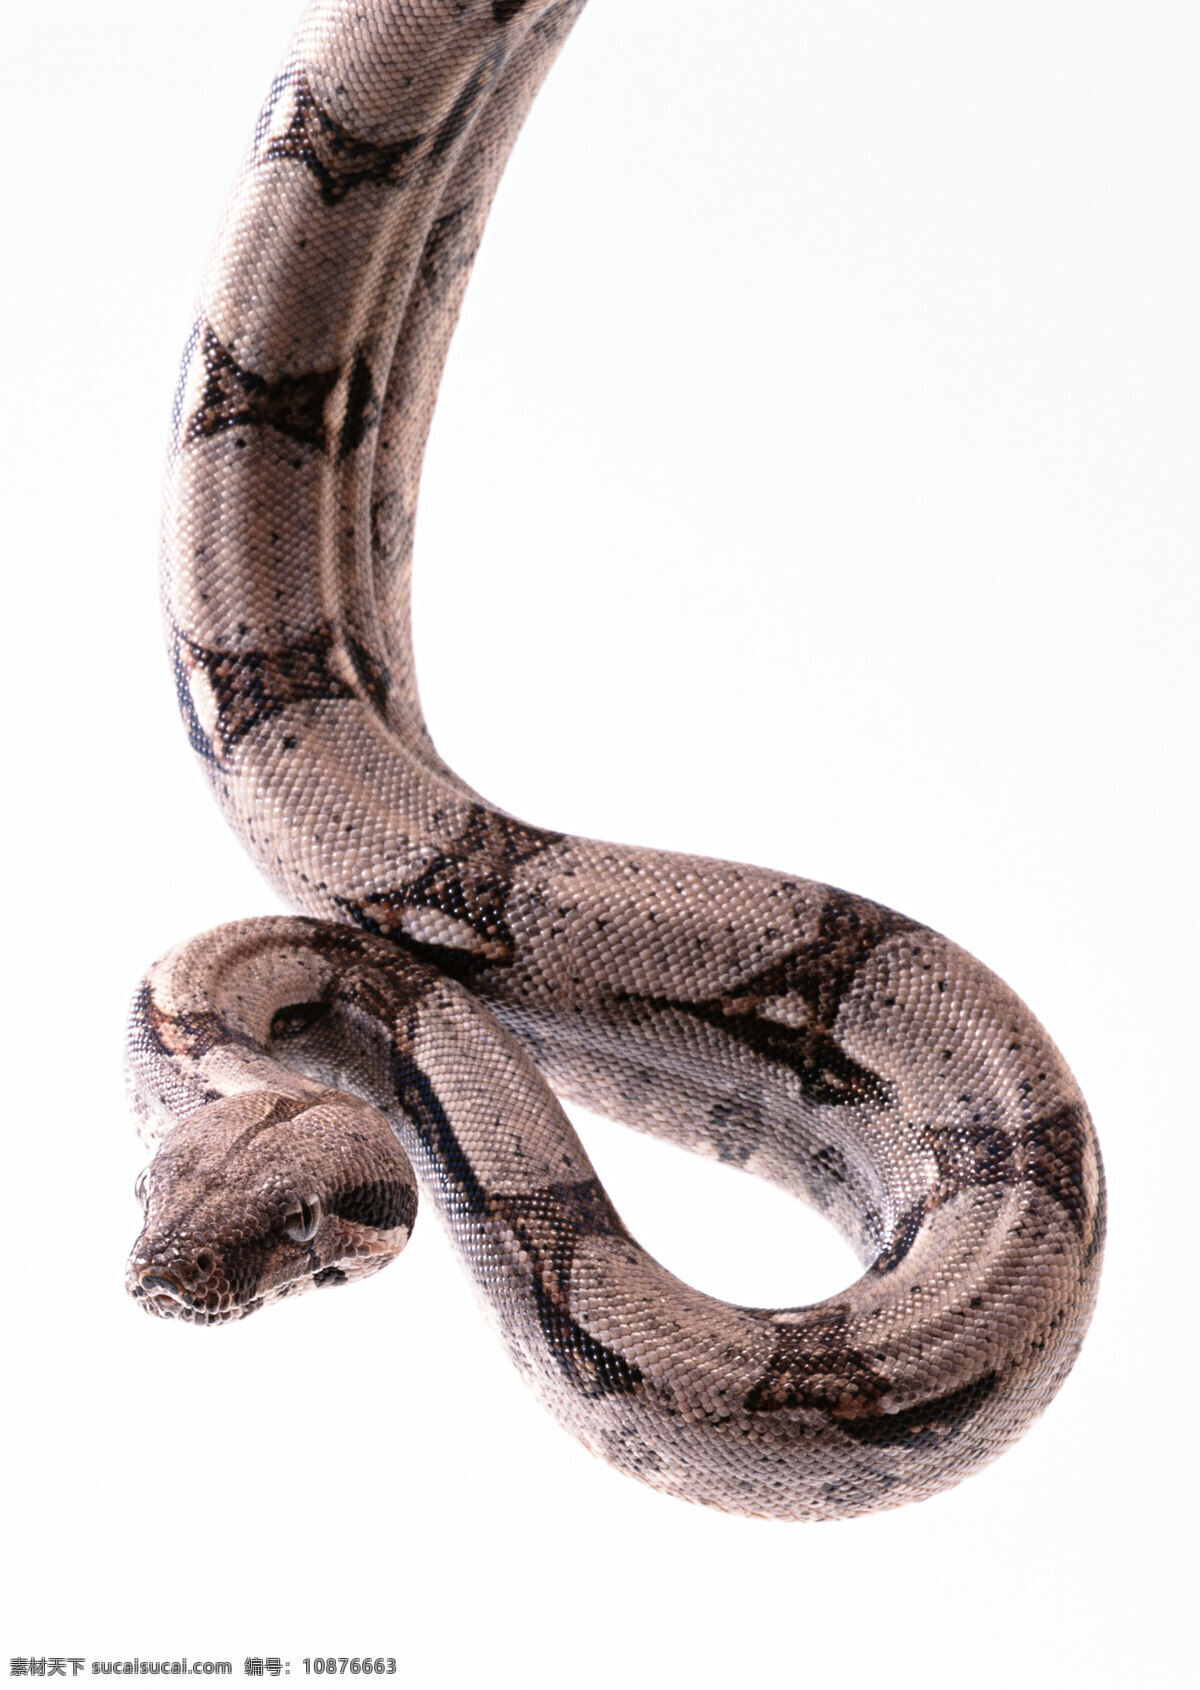 蛇 蟒蛇 乌龟 动物 蛇照片 大蟒蛇 非洲蟒 生物世界 野生动物